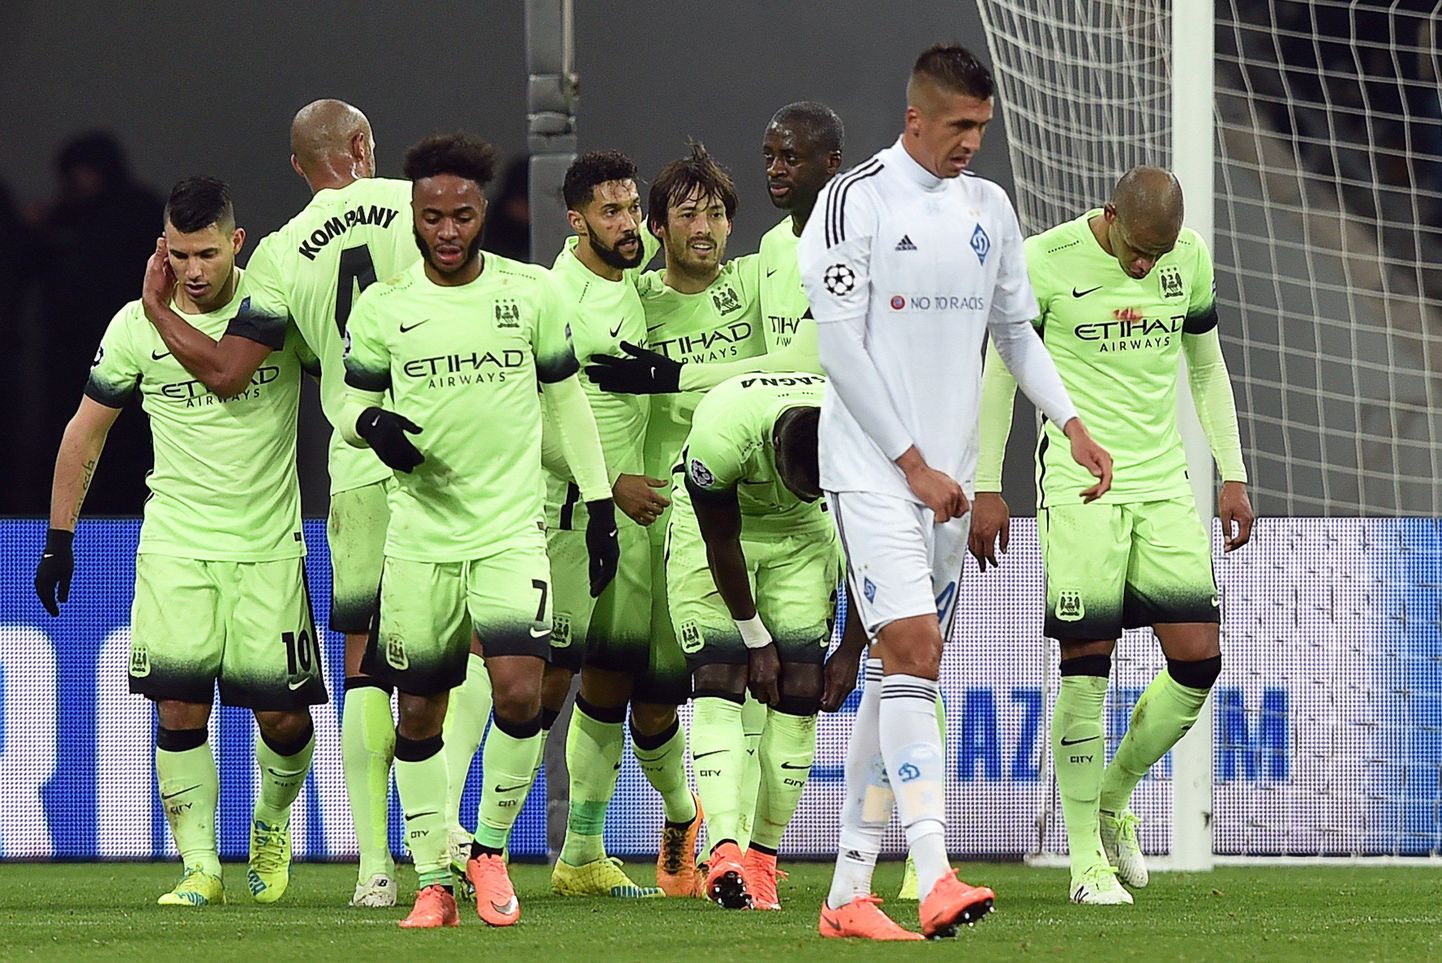 Manchester City mängijad rõõmustamas Kiievi Dinamo vastu löödud värava üle.